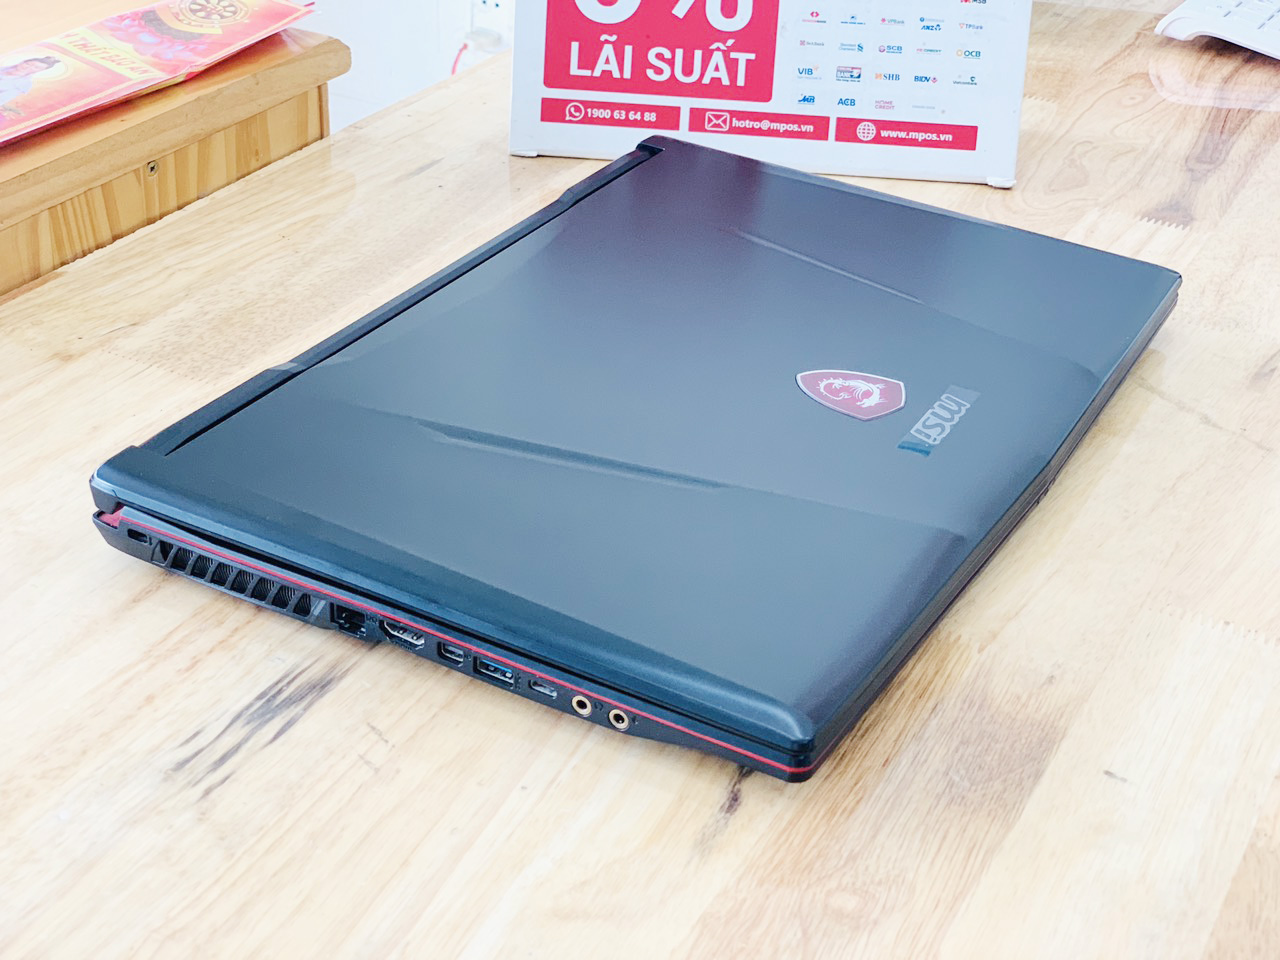 Laptop Gaming MSI GL63 i7-8750H Ram 8G SSD 128G + HDD 1TB Nvidia GTX1050 15.6 inch Full HD